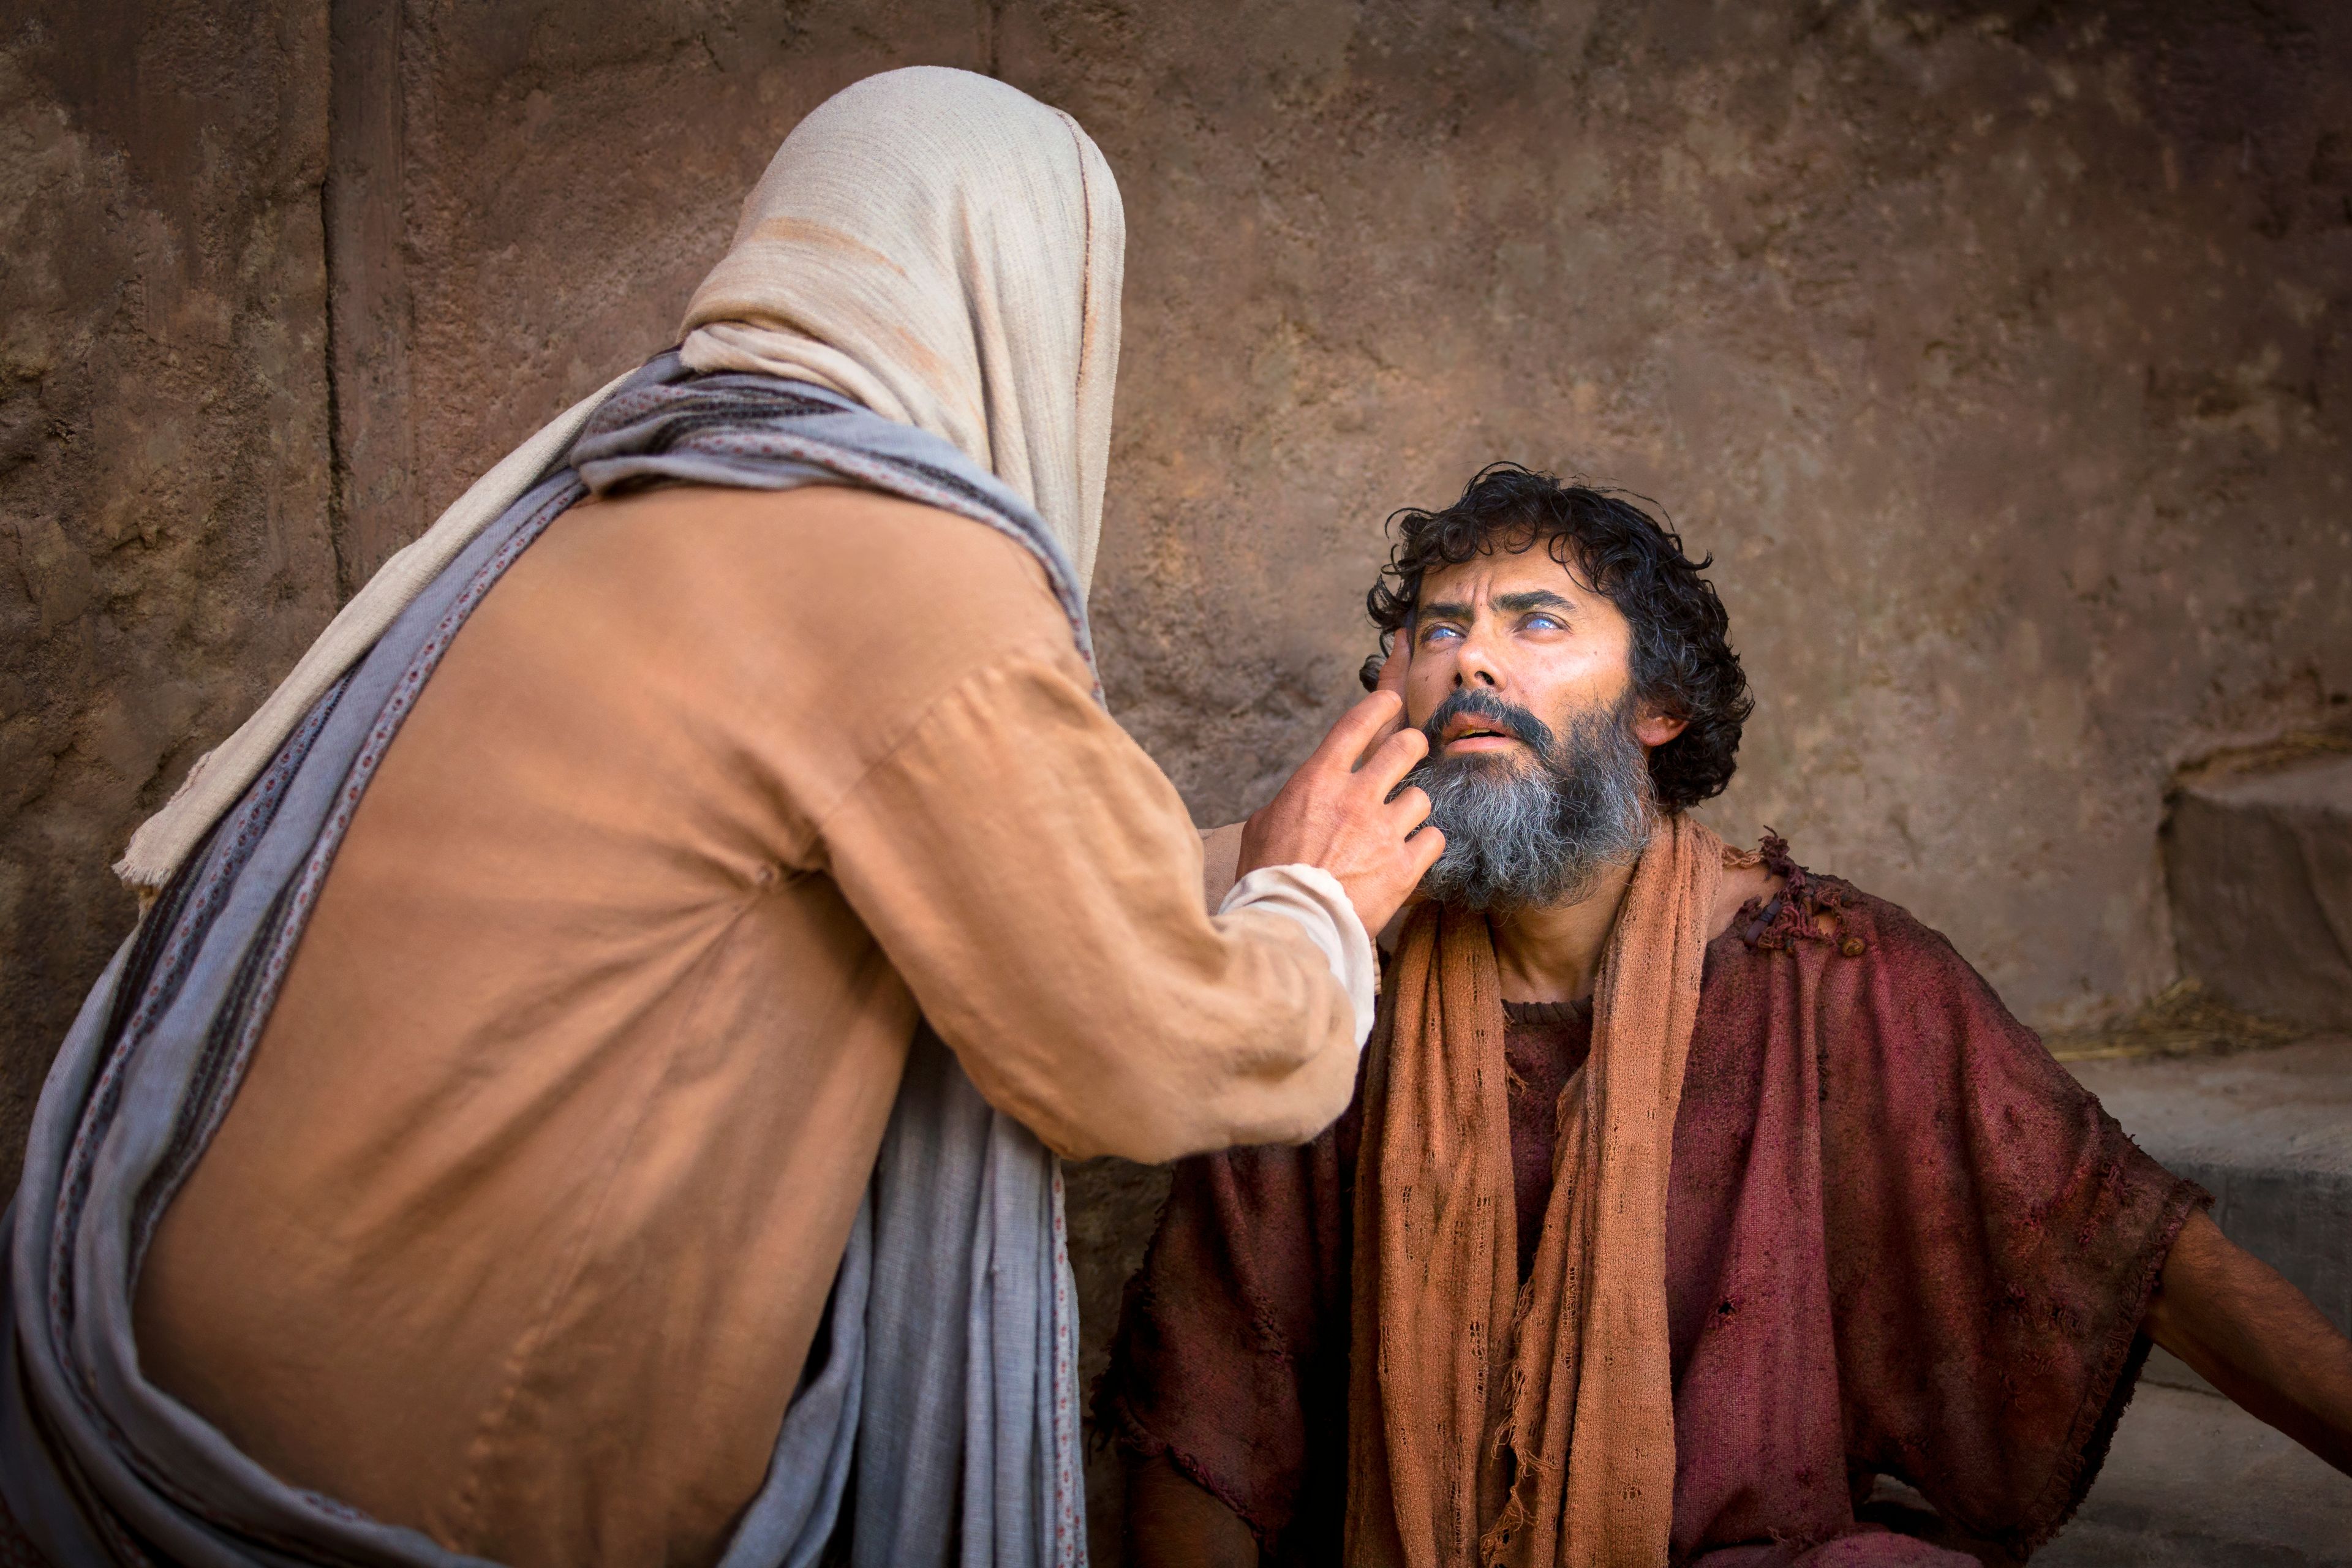 Christ healing a blind man.